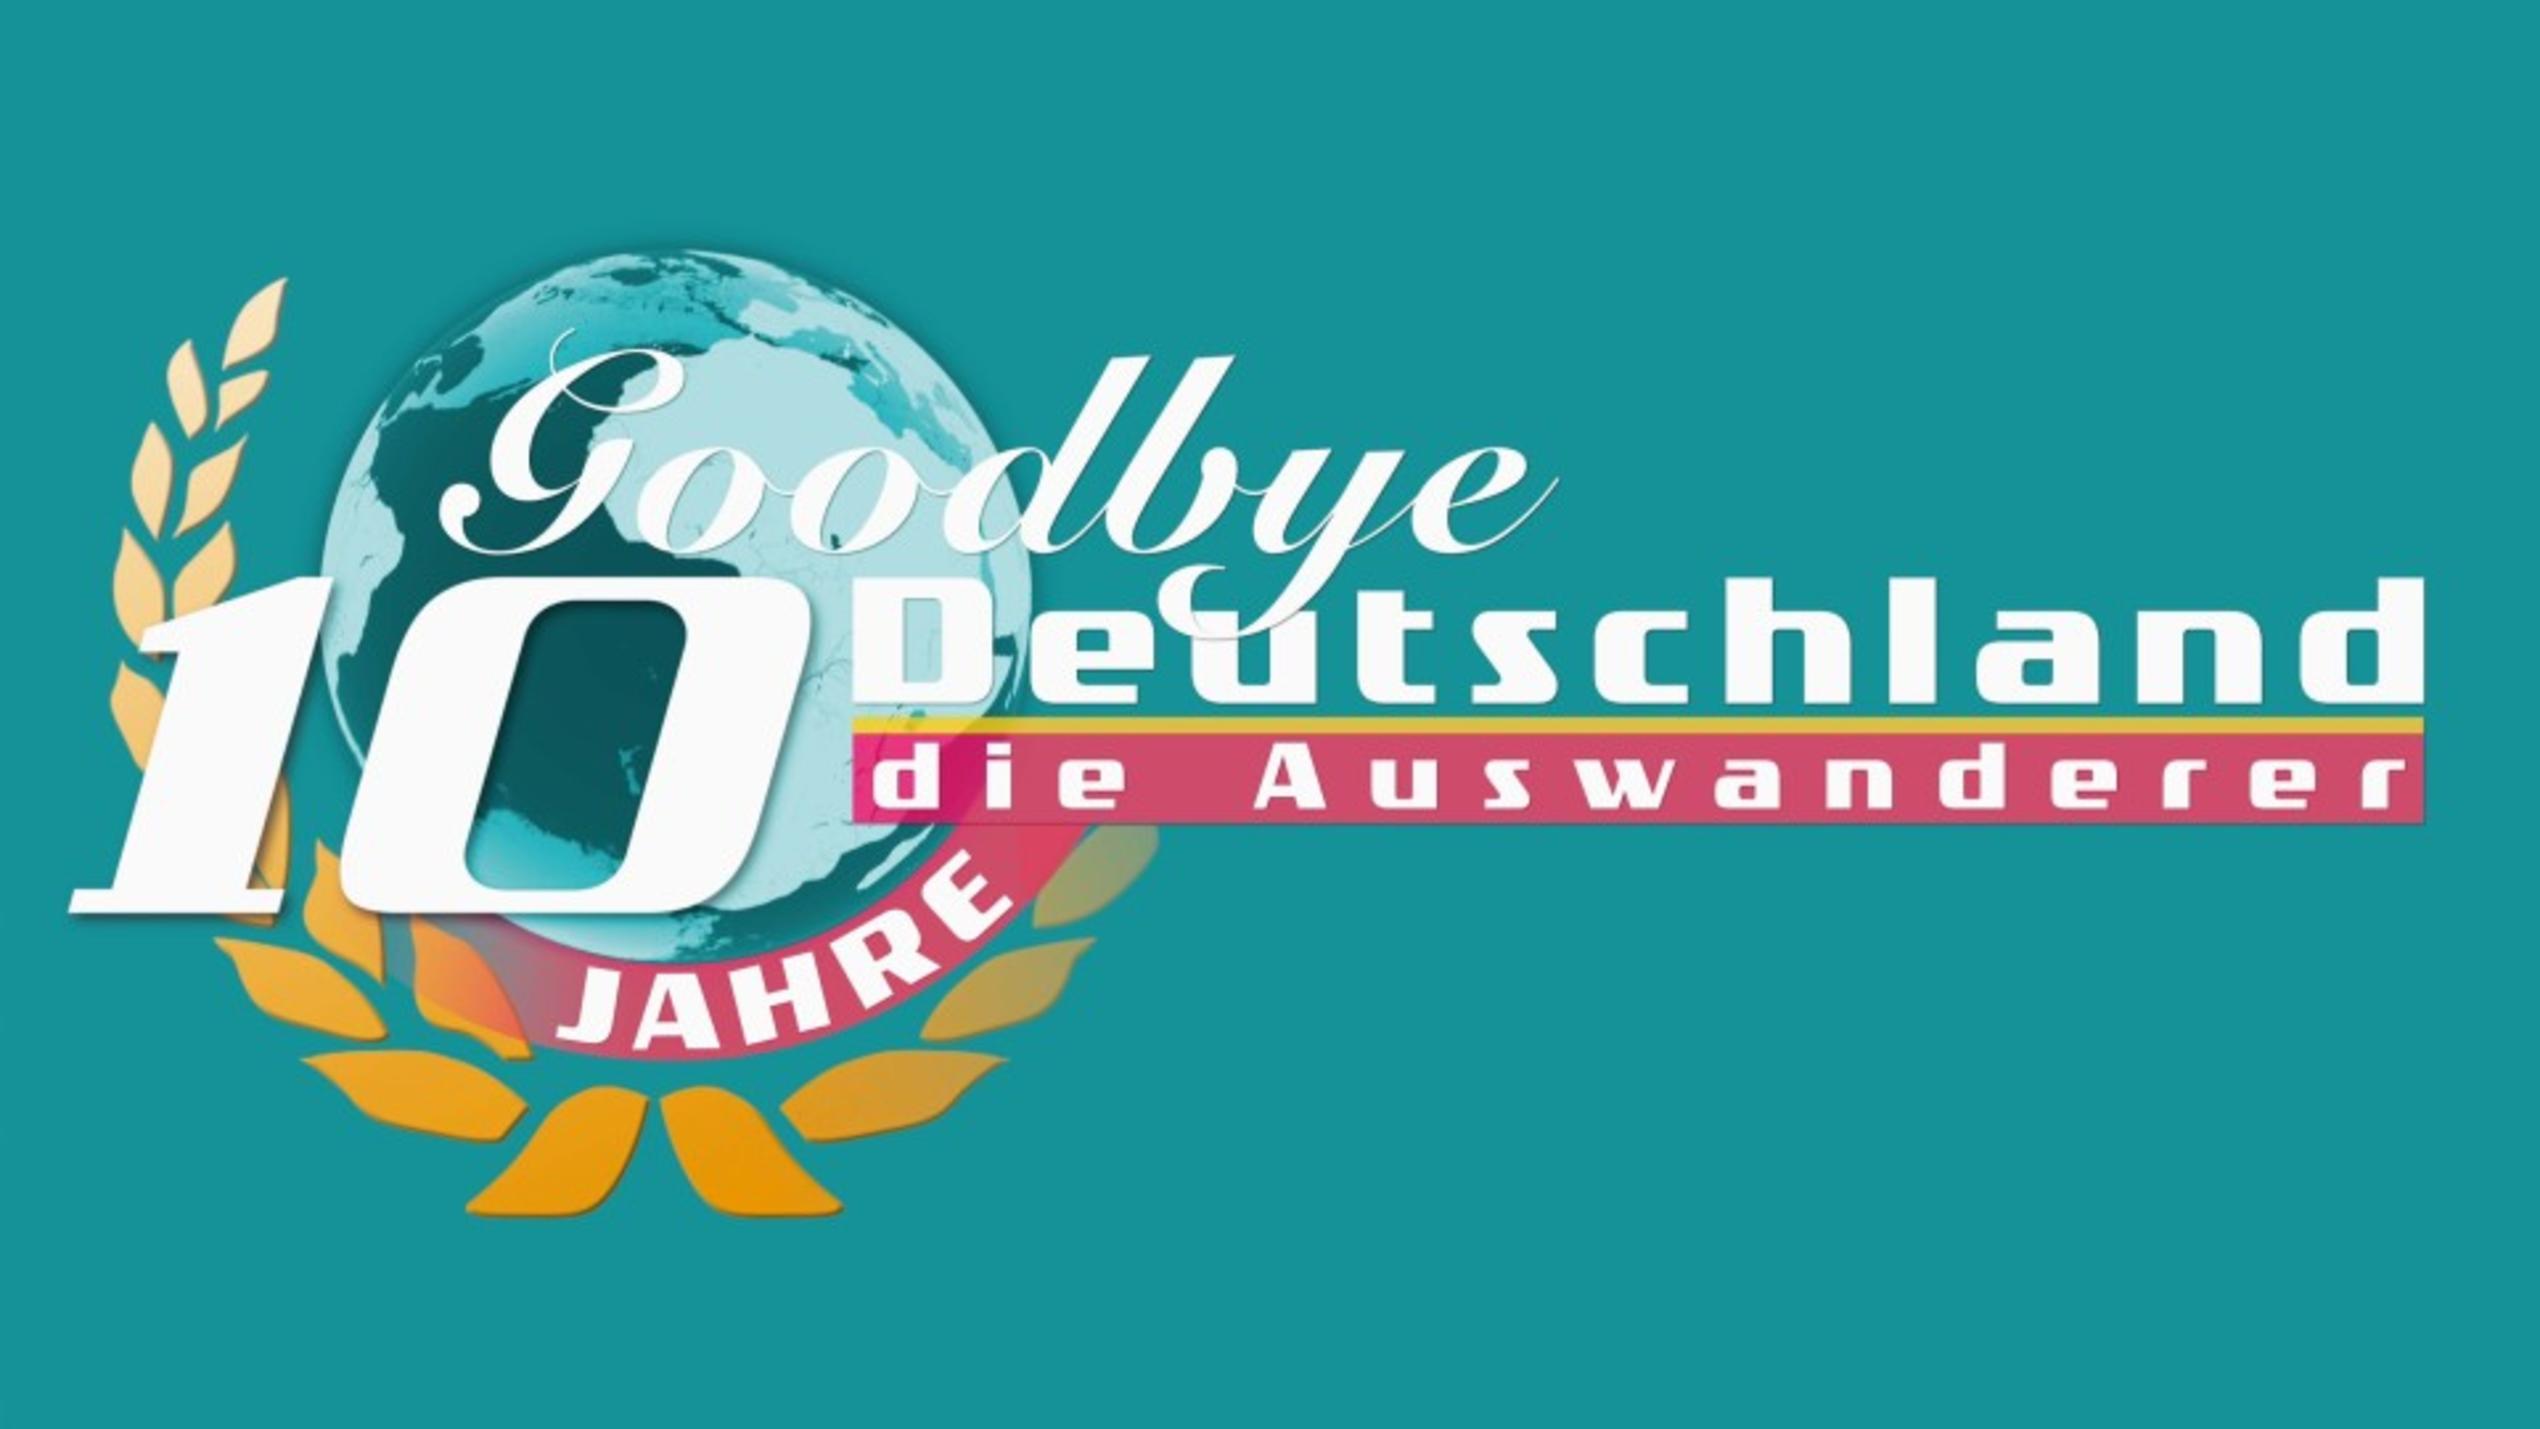 10 Jahre Goodbye Deutschland:Seit einem Jahrzehnt auf der Suche nach dem Auswanderer-Glück